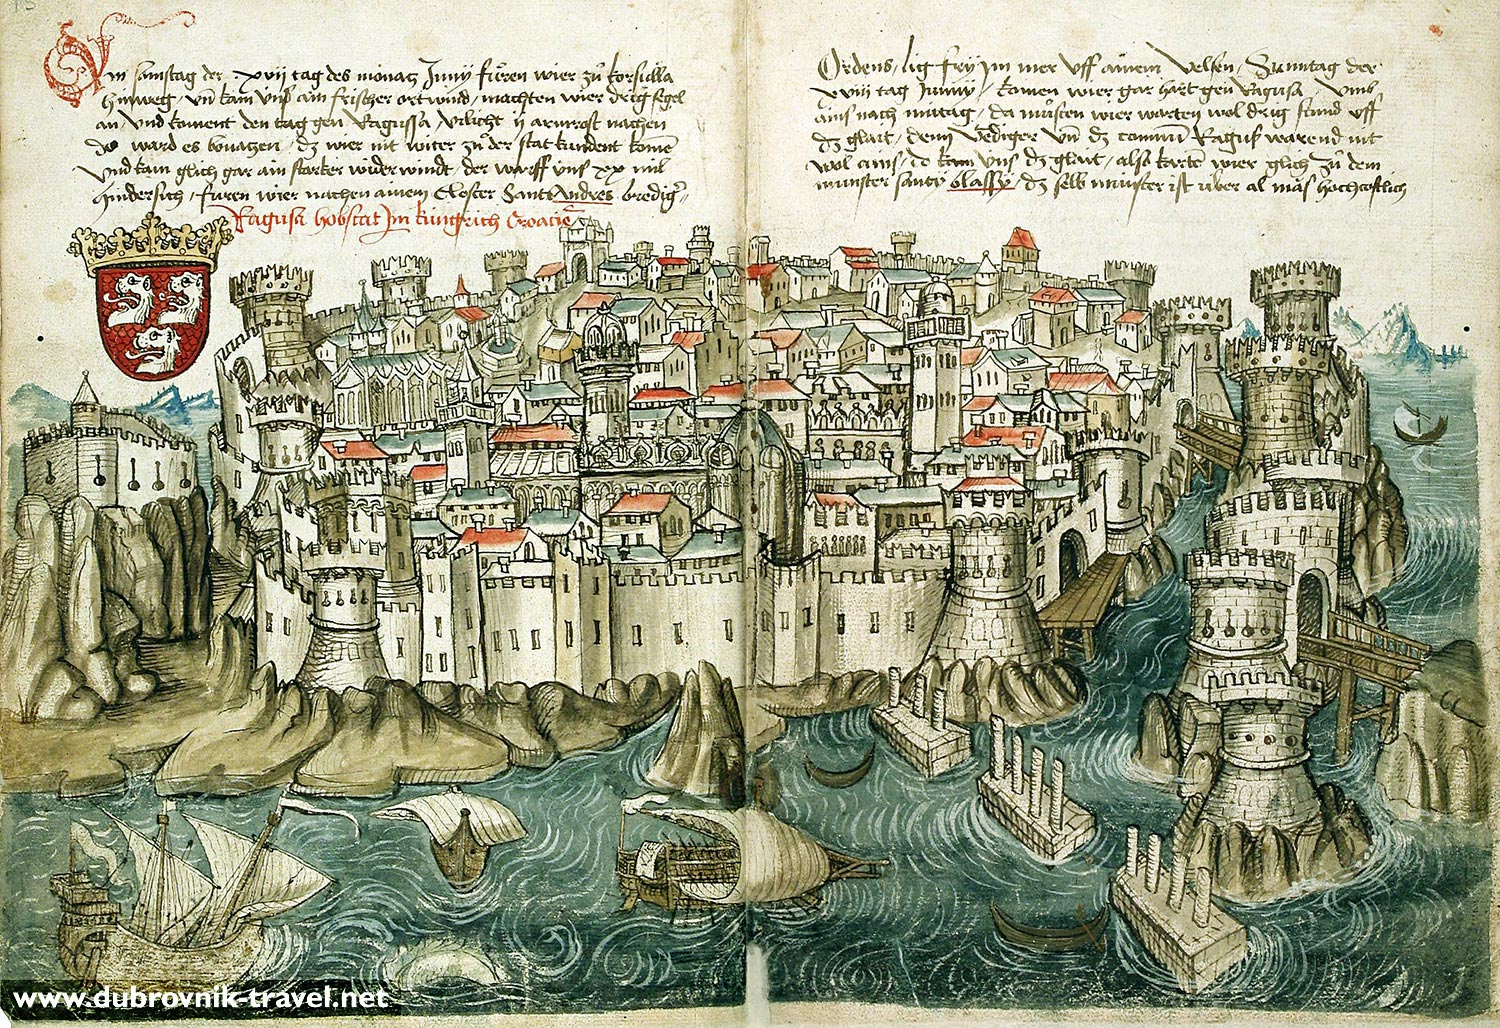 Dubrovnik in 1458 by Conrad Von Grunenberg